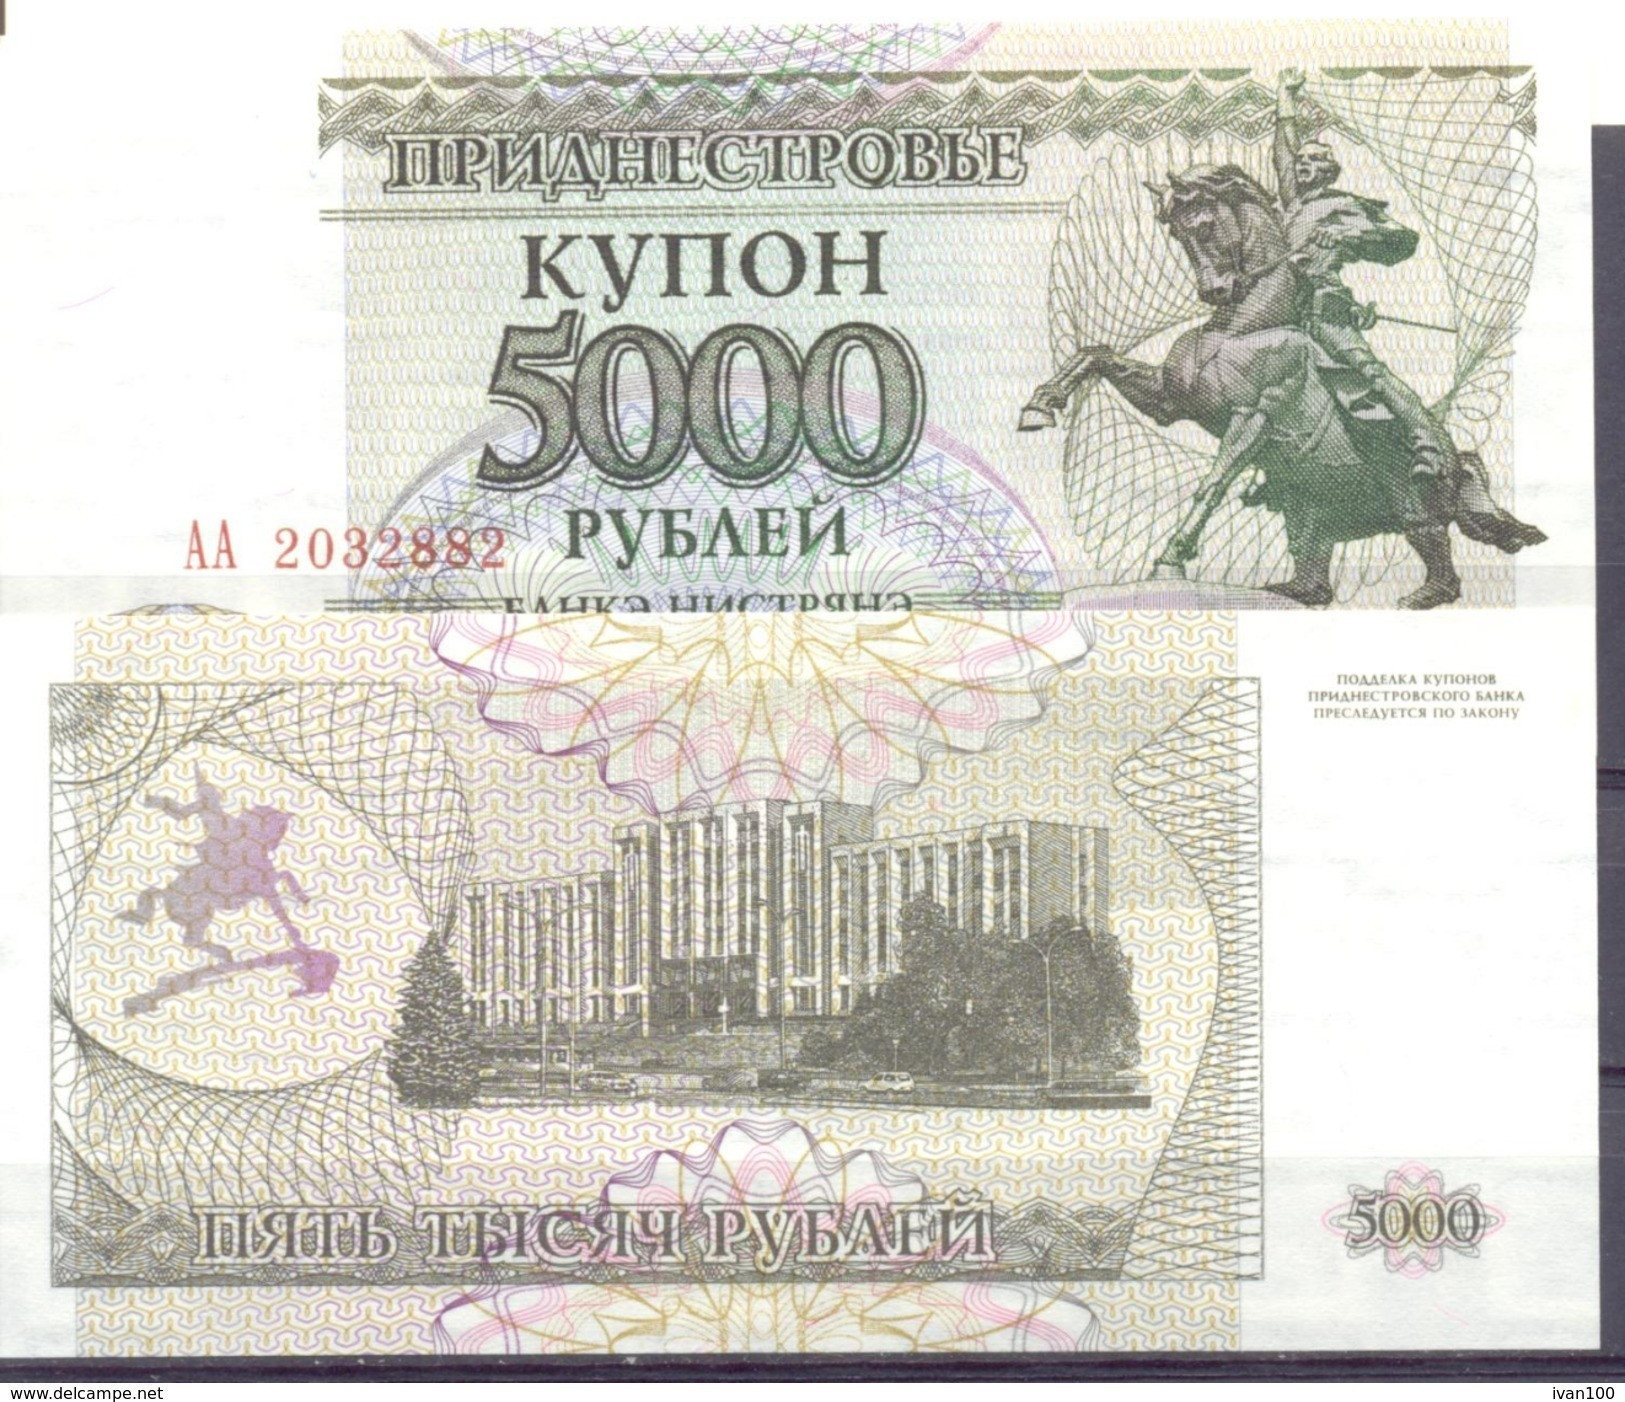 1995. Transnistria, 5000 Rub, P-24, UNC - Moldova